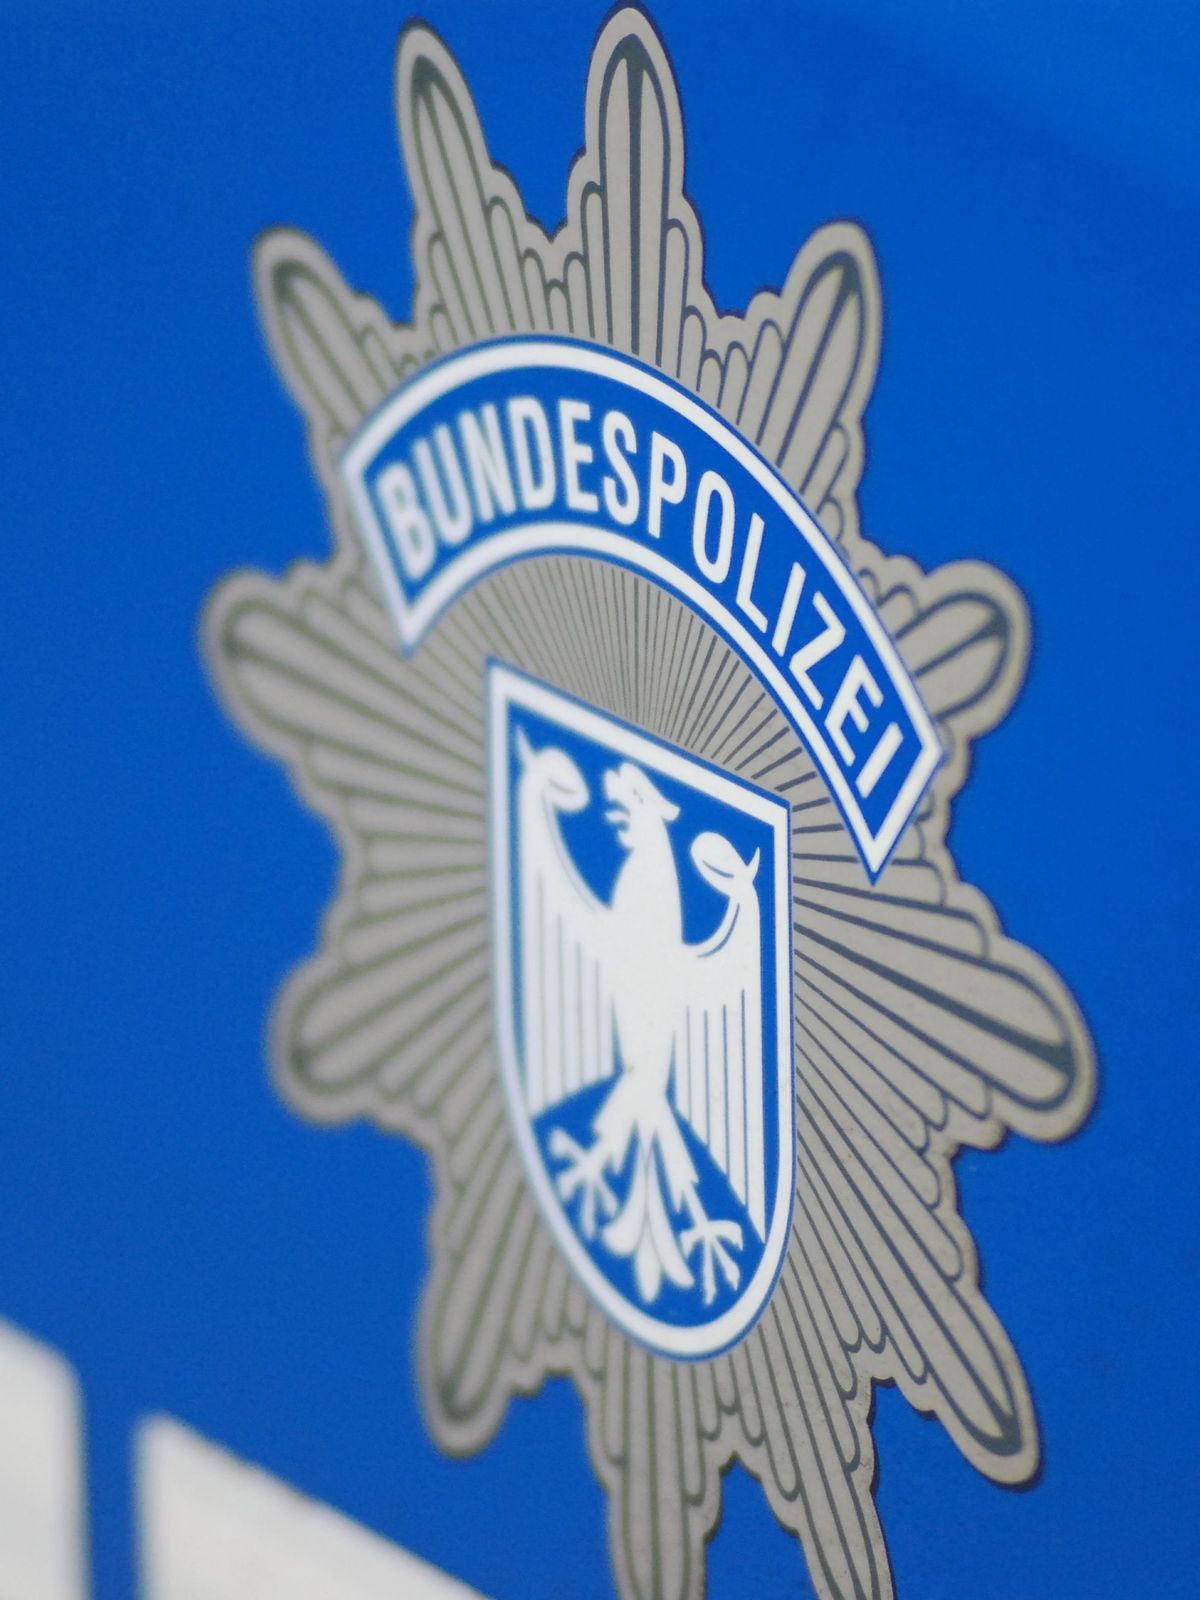 Bundespolizisten haben am Dortmunder Flughafen ein Ehepaar festgenommen.